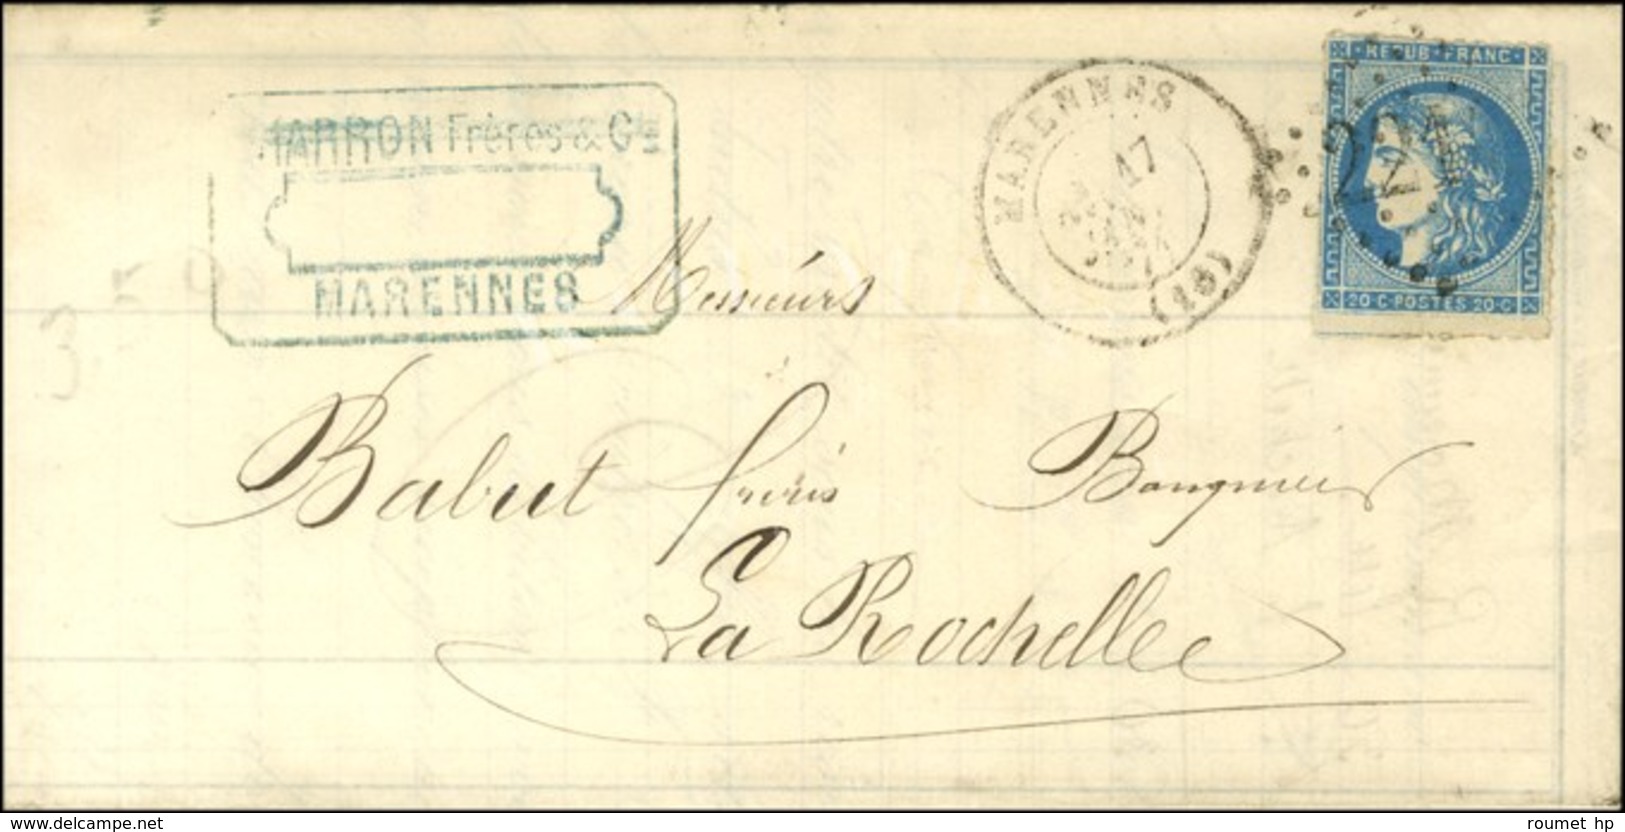 GC 2210 / N° 46 Avec Perçage De Marennes Càd T 17 MARENNES Sur Lettre Pour La Rochelle. 1871. - TB. - 1870 Emissione Di Bordeaux